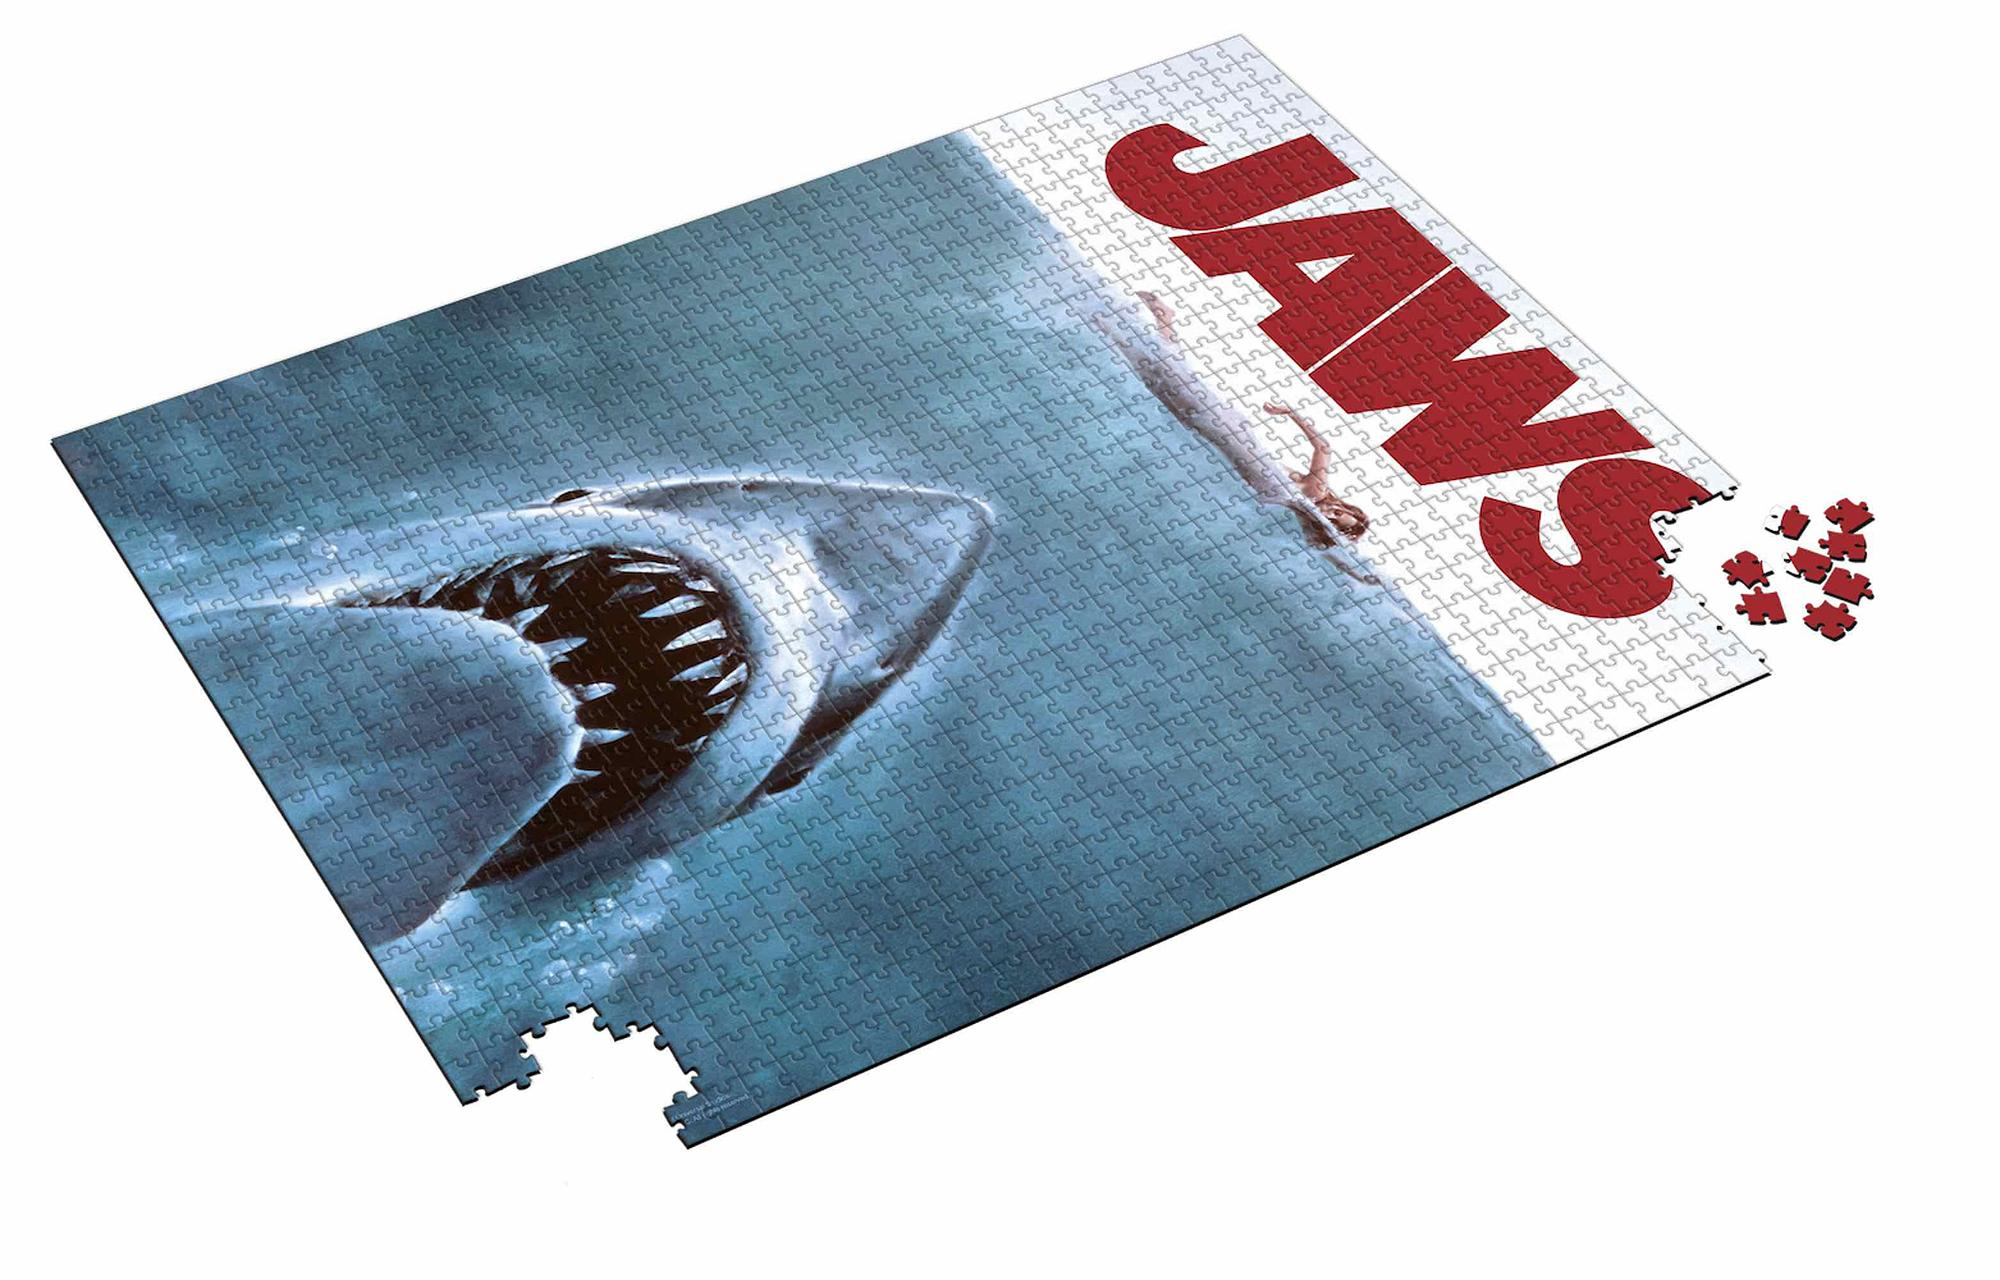 SD DISTRIBUCIONES Jaws Der Mehrfarbig Weiße Hai Filmplakatmotiv Puzzle